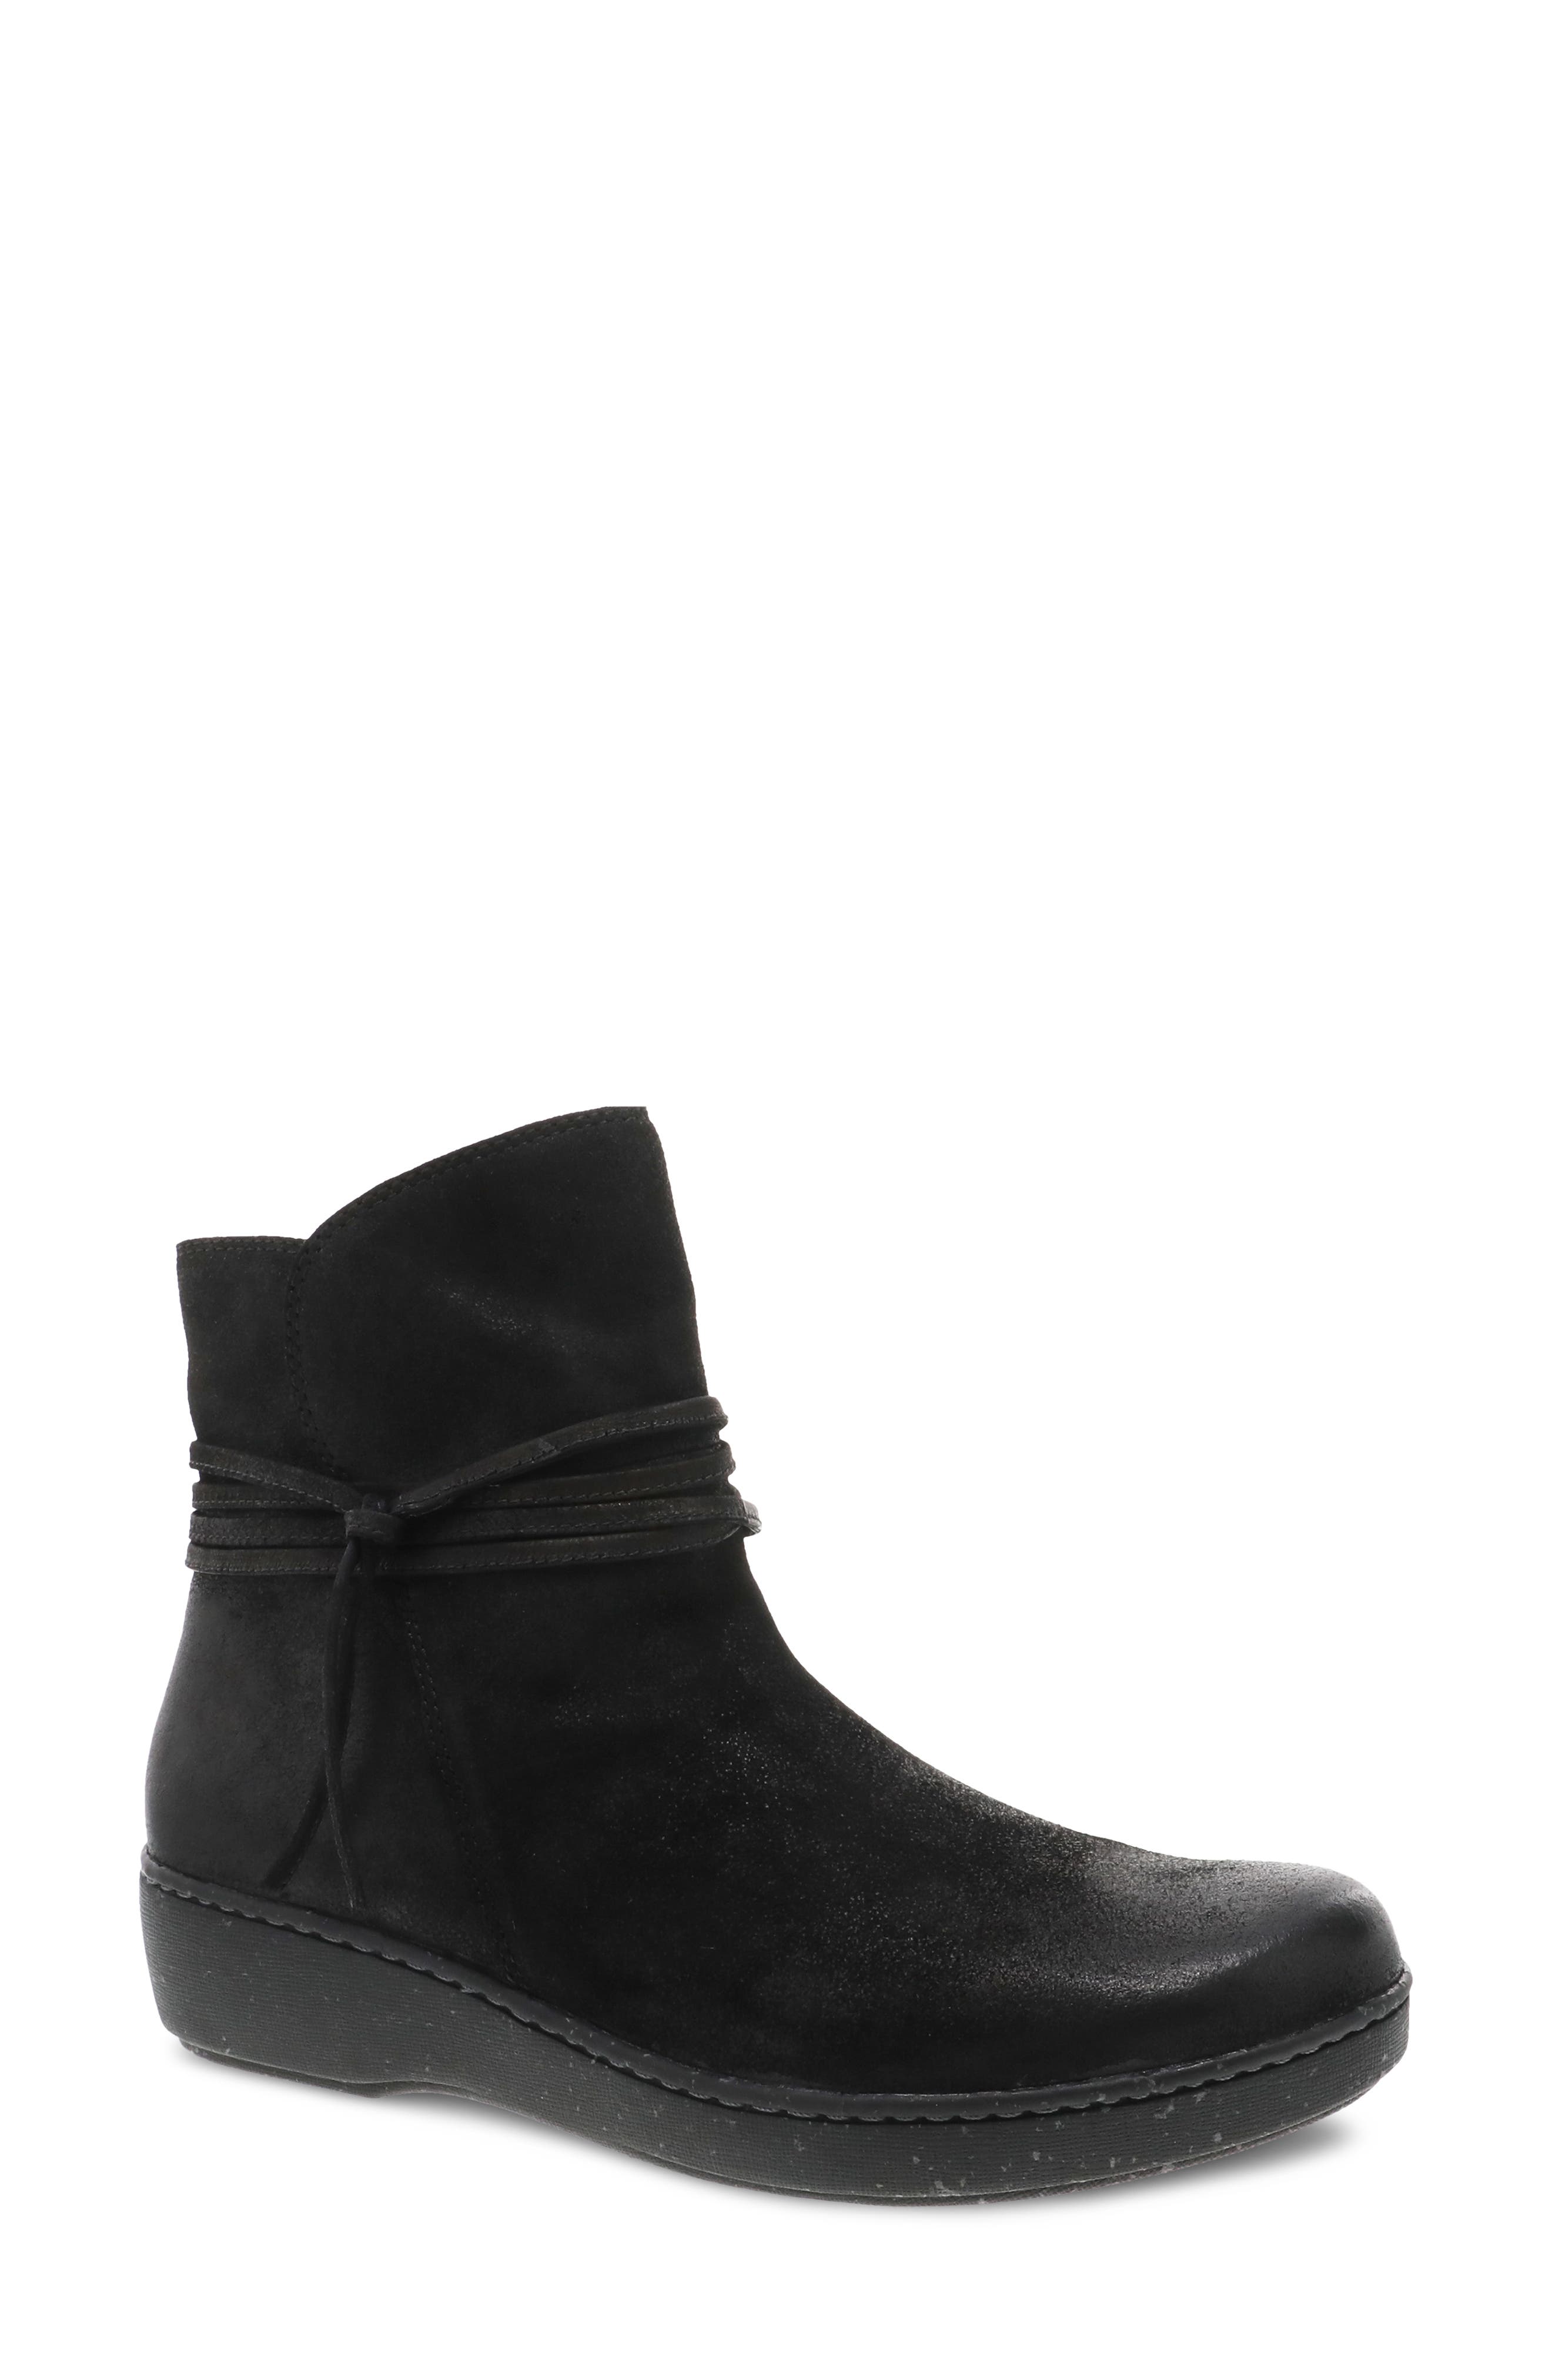 dansko womens winter boots